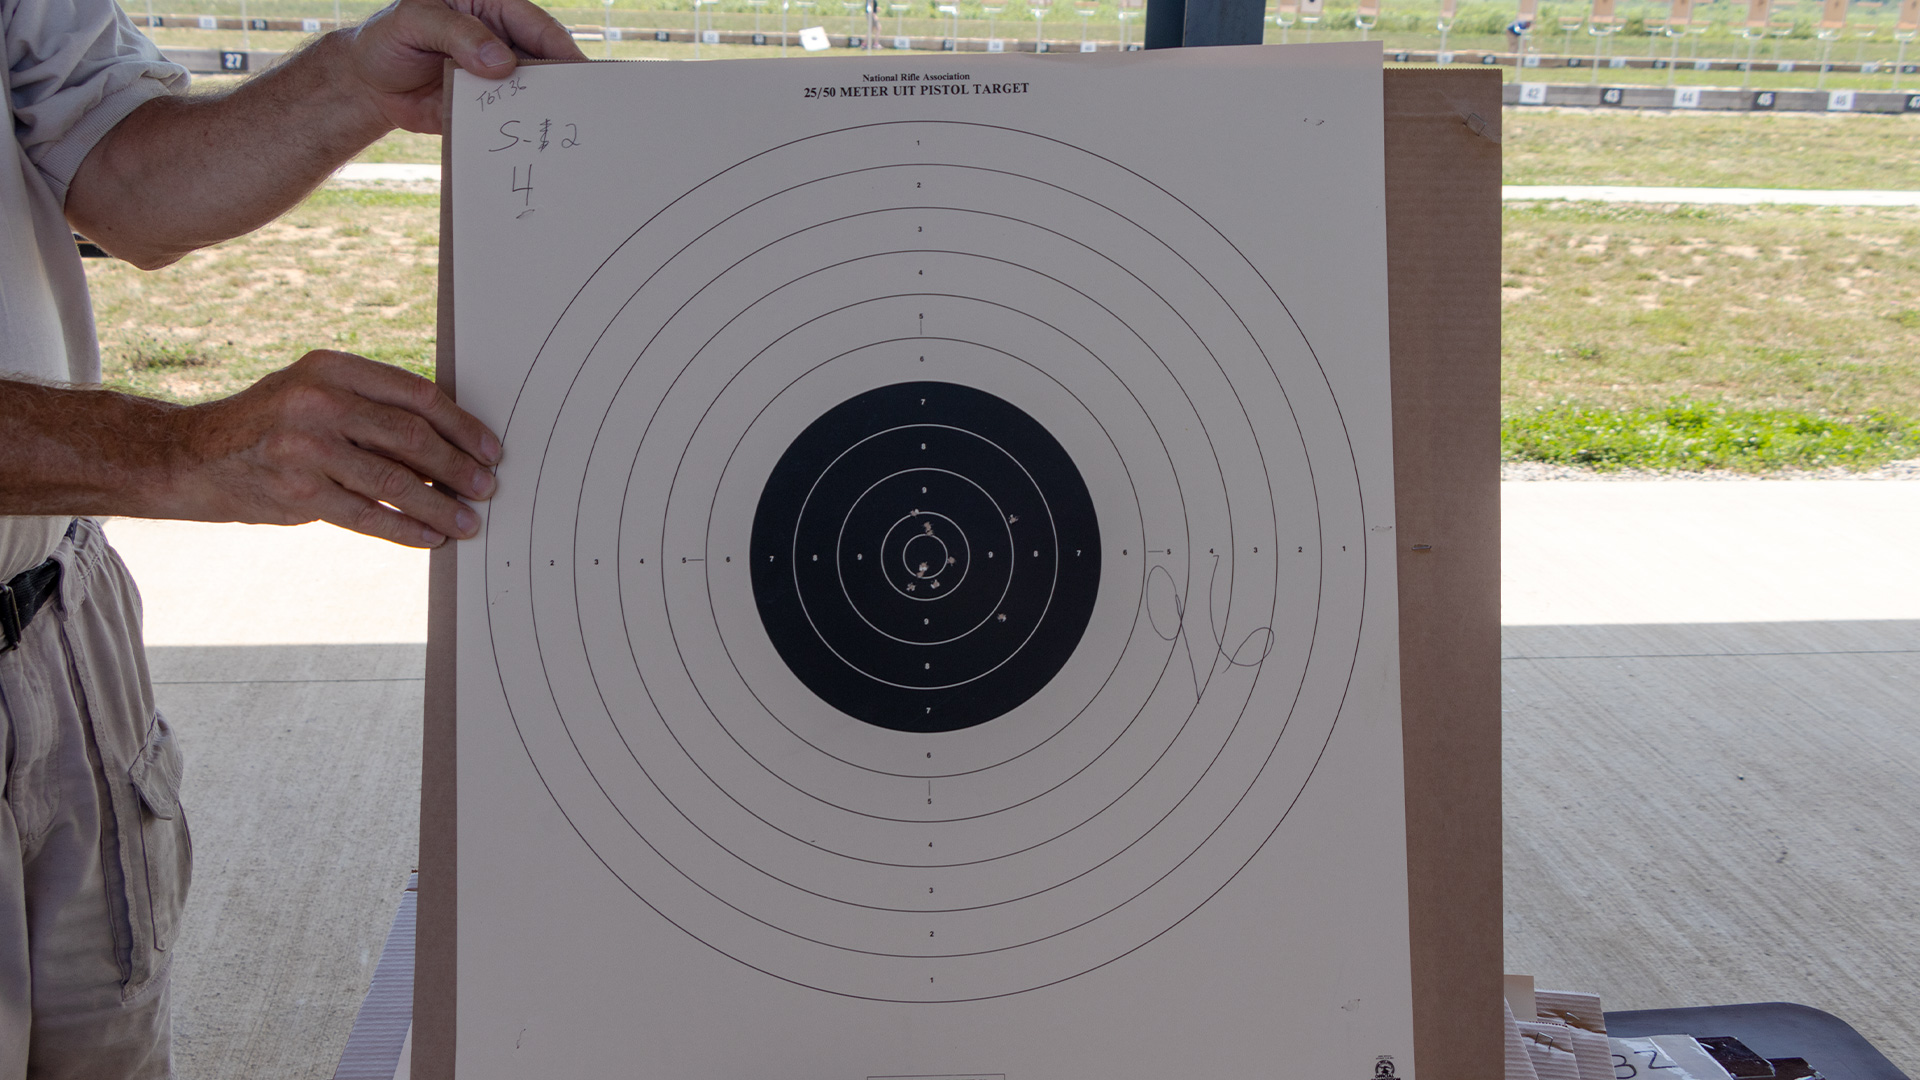 Bullseye pistol target